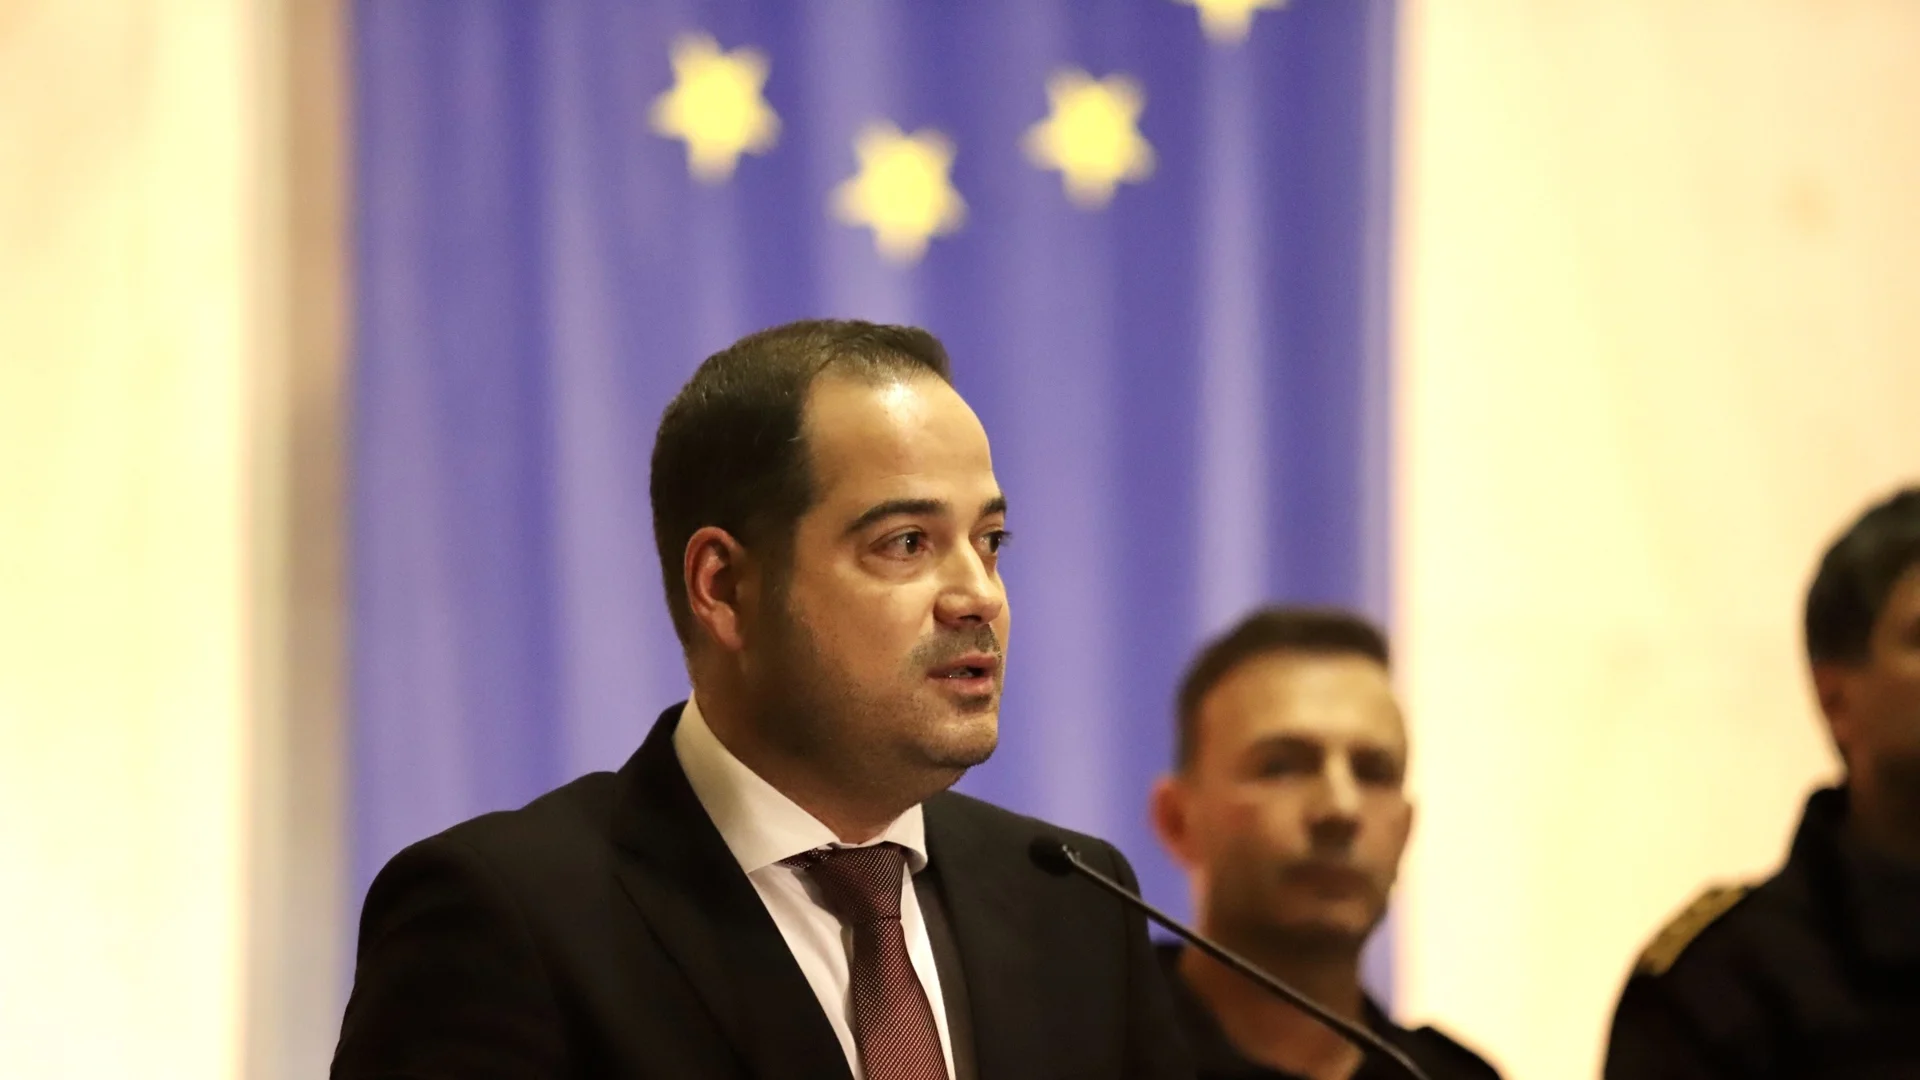 МВР министърът: Доказахме, че можем да охраняваме и границите на обединена Европа